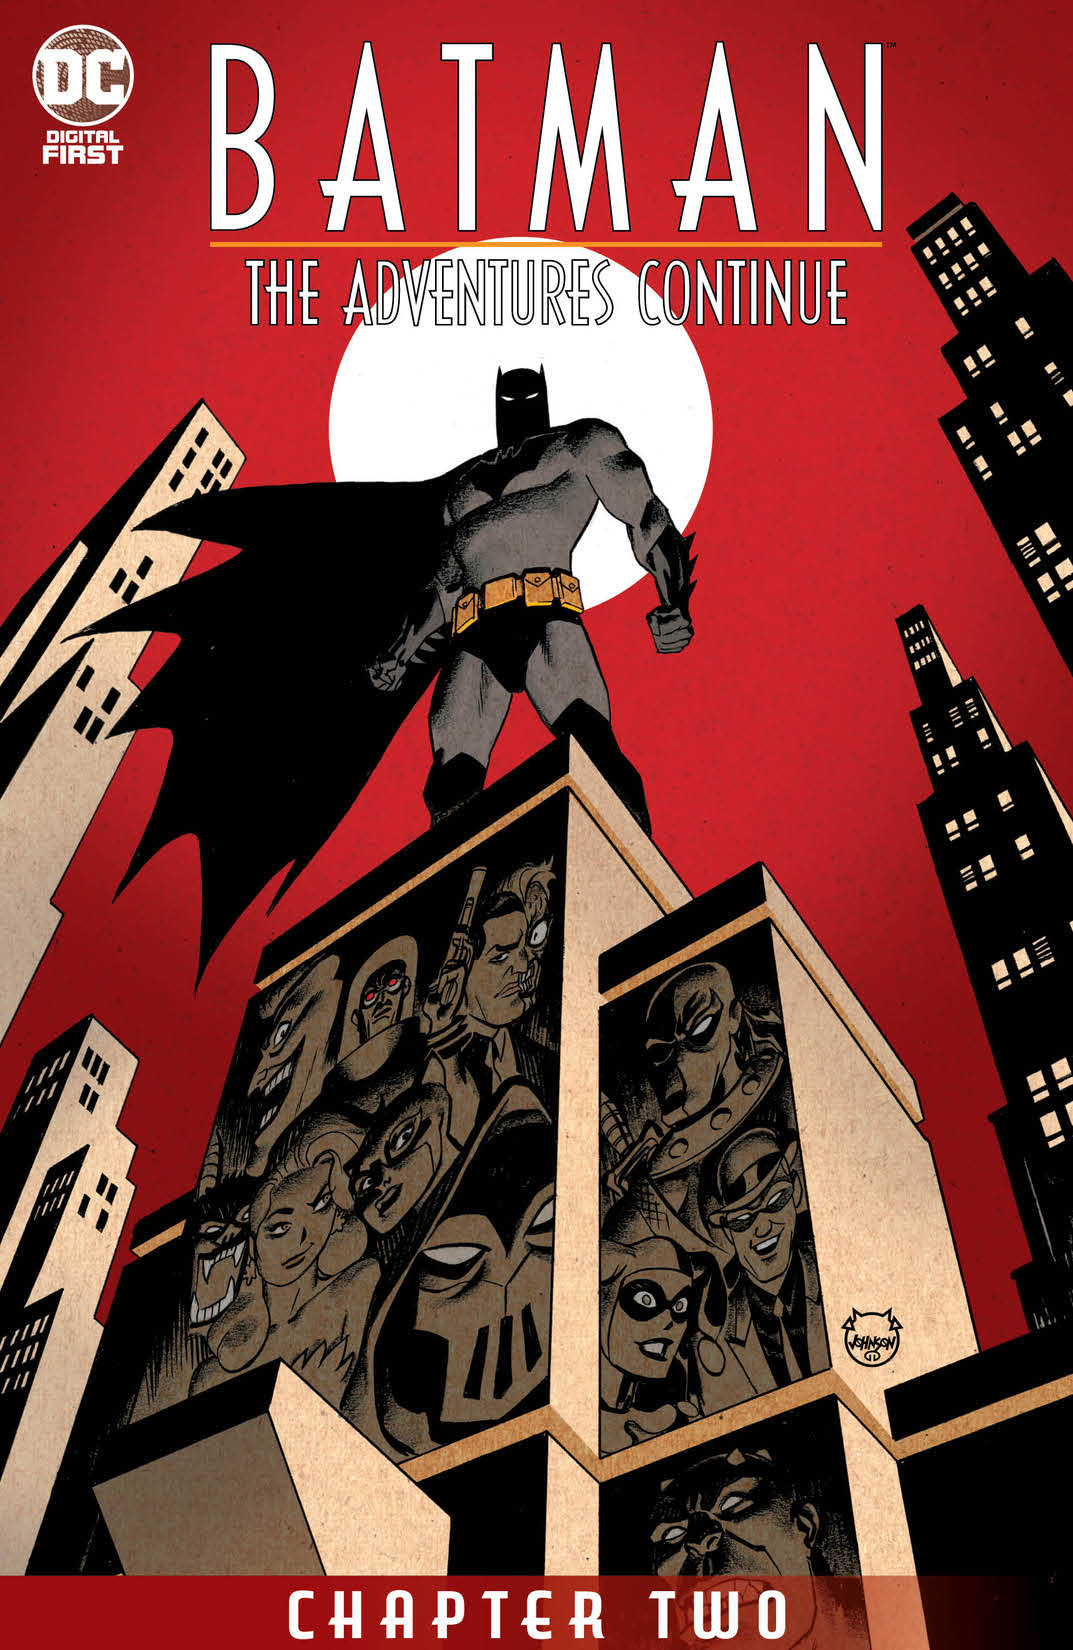 Batman: The Adventures Continue #2 preview images